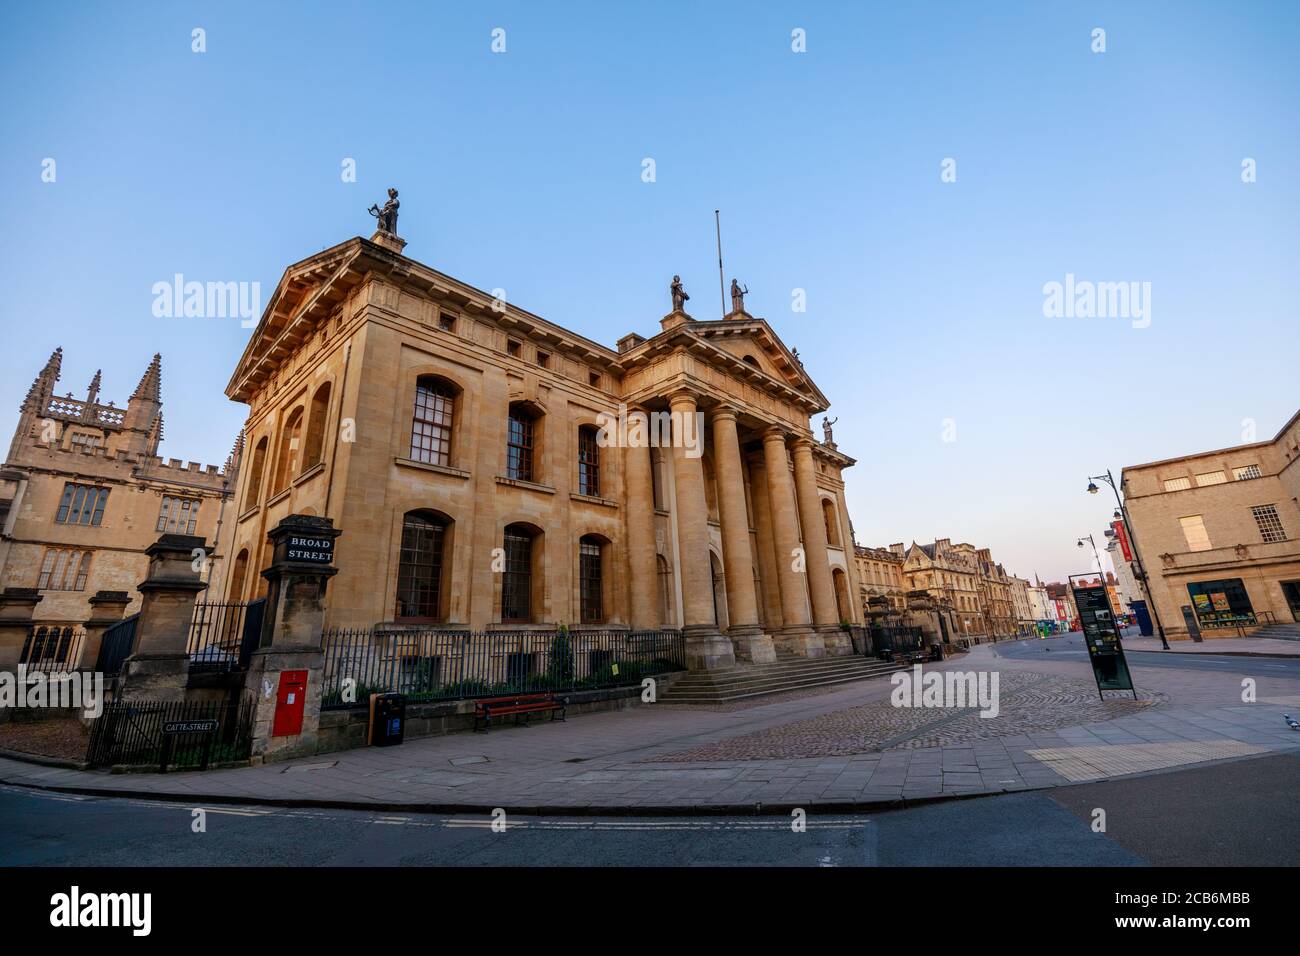 Das Clarendon Building und die Broad Street in Oxford ohne Leute. Früh am Morgen. Oxford, England, Großbritannien. Stockfoto